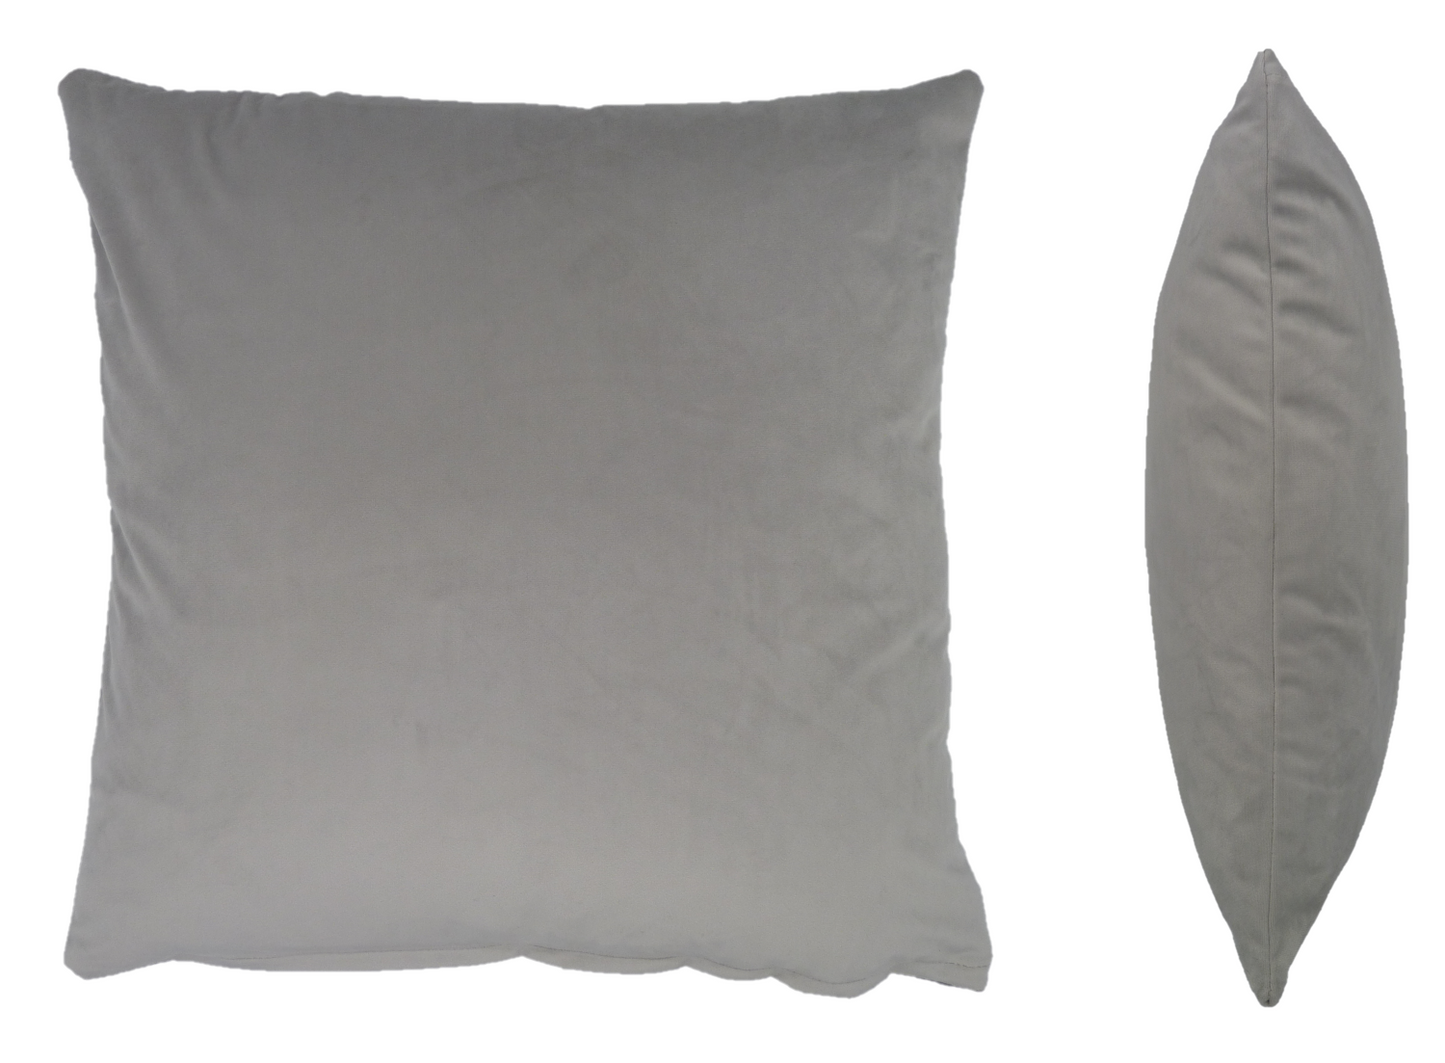 Opulence Silver Velvet Cushion (50cm x 50cm)